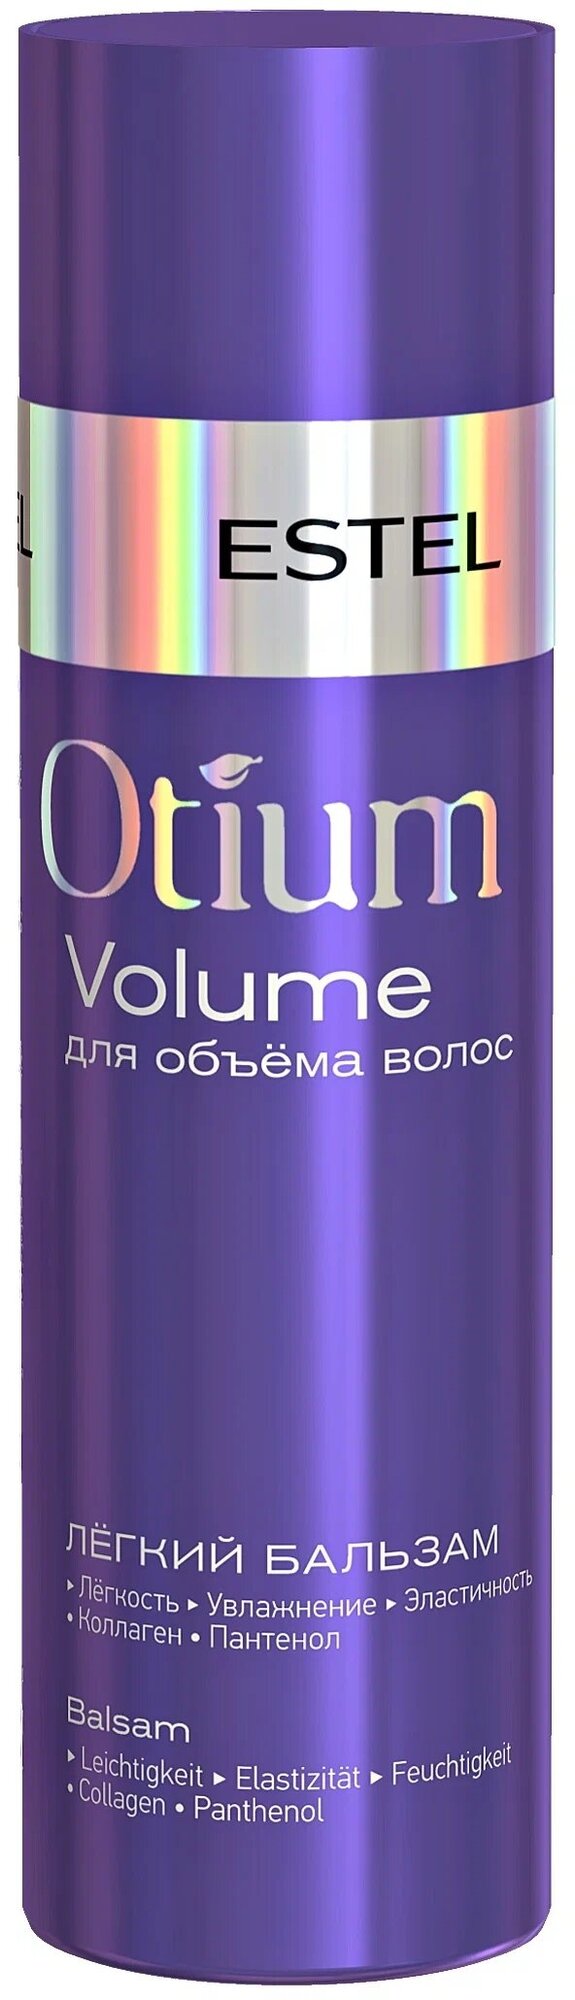 ESTEL бальзам Otium Volume легкий для объёма, 200 мл